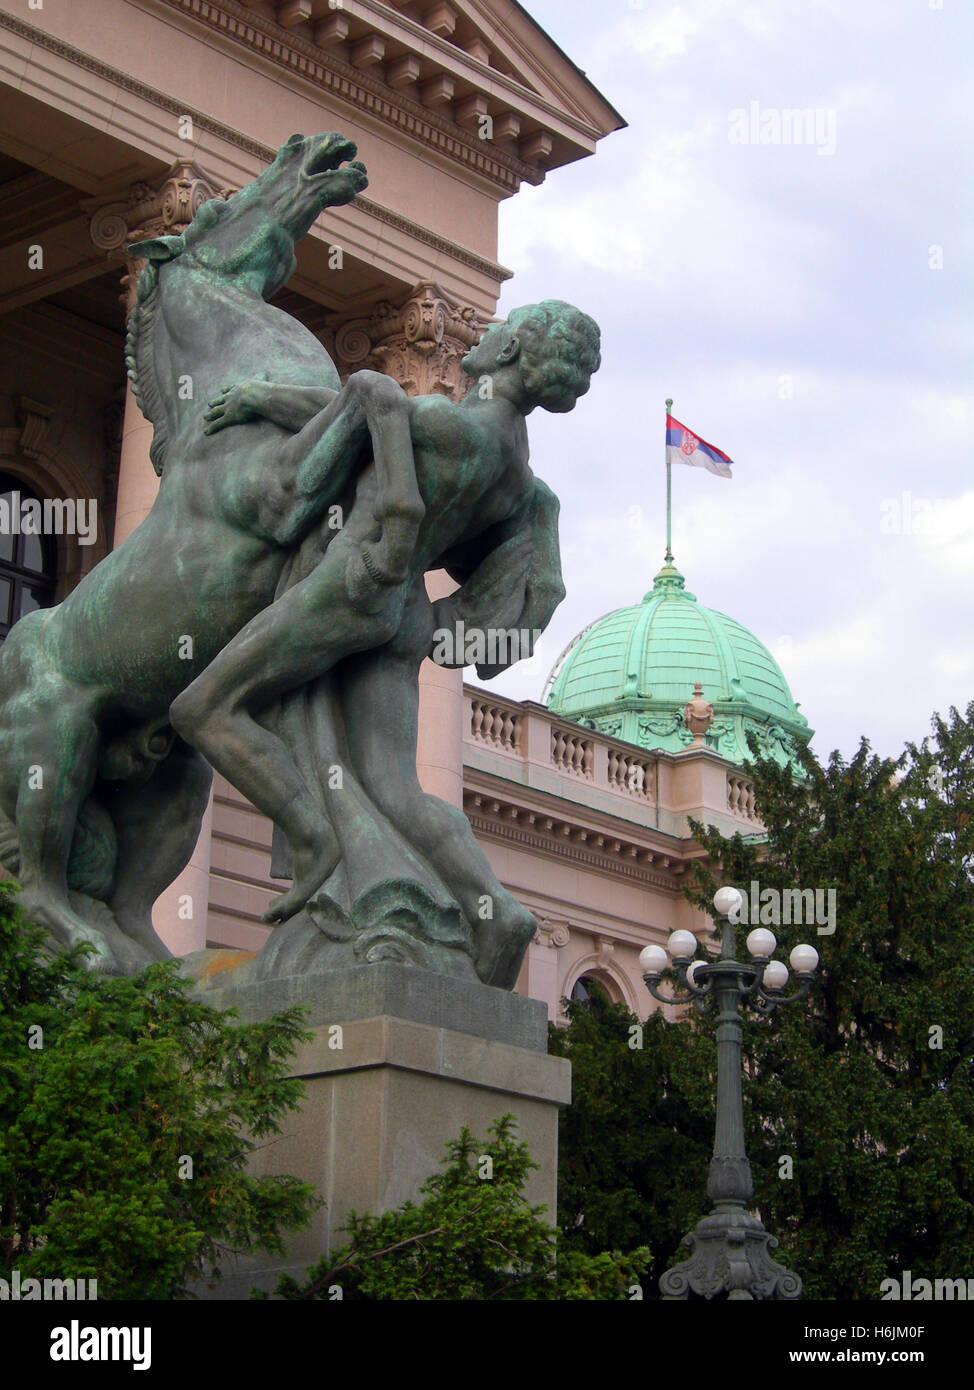 Statua monumento di uomo e cavallo entrata alla casa dell'Assemblea nazionale della Repubblica di Serbia il palazzo del Parlamento con la bandiera nazionale Belgra Foto Stock